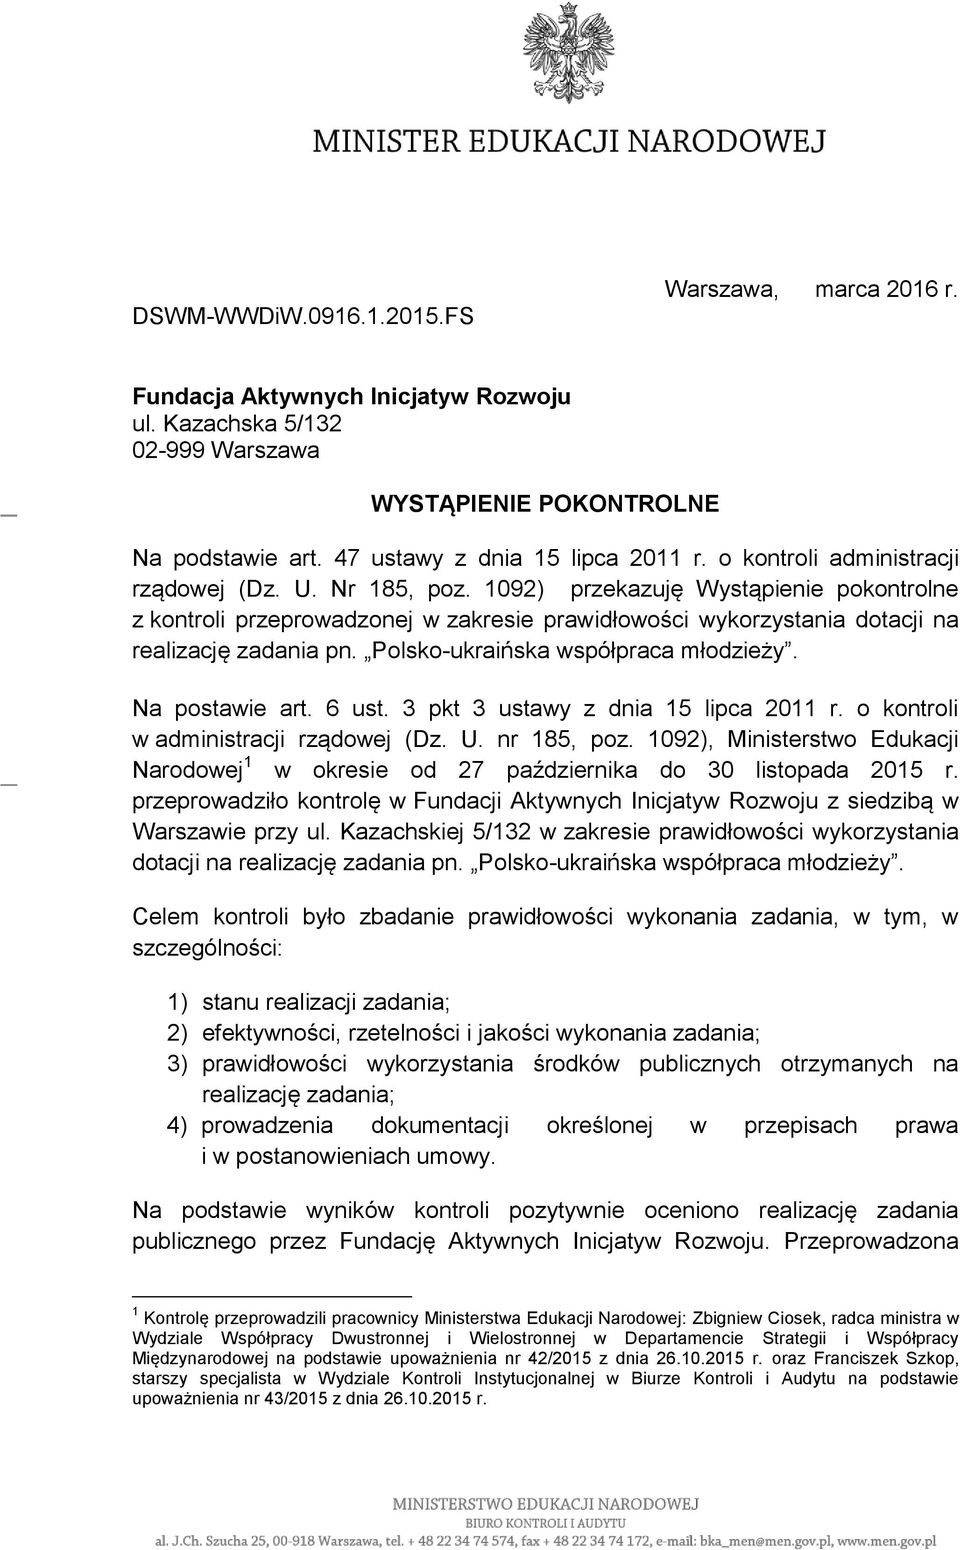 Polsko-ukraińska współpraca młodzieży. Na postawie art. 6 ust. 3 pkt 3 ustawy z dnia 15 lipca 2011 r. o kontroli w administracji rządowej (Dz. U. nr 185, poz.